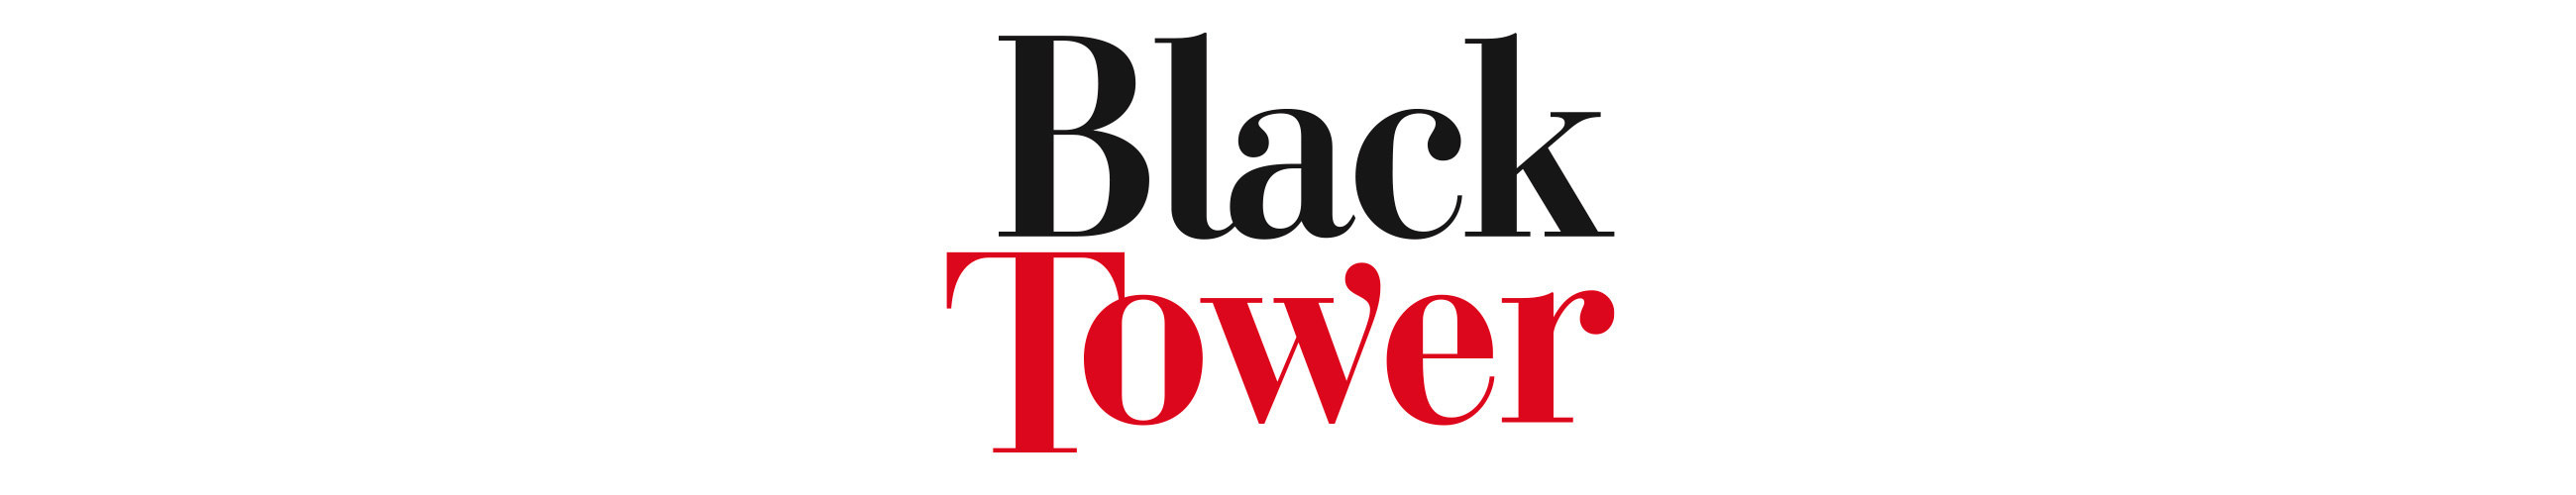 Black Tower logo redesign, pakningsdesign, logodesign, håndtegnet logo, revitalisering, Strømme Throndsen design 